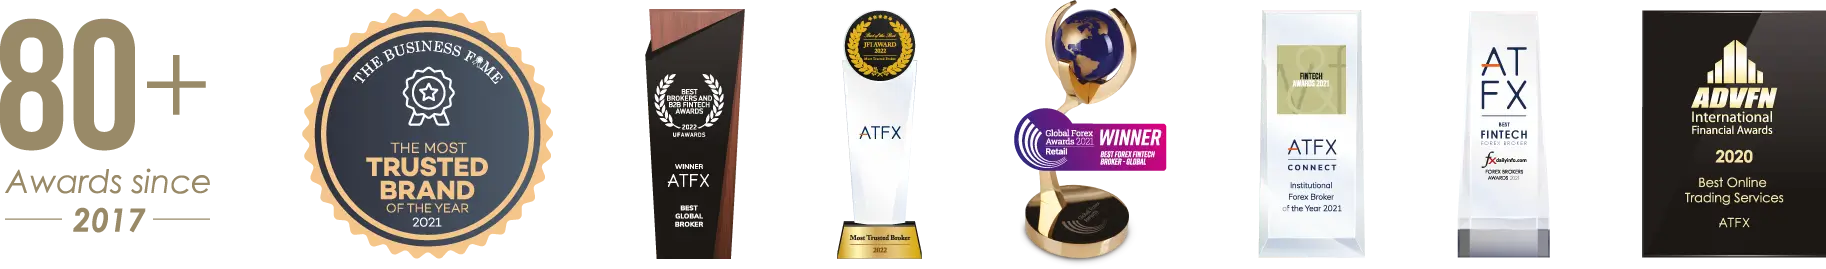 ATFX_awards